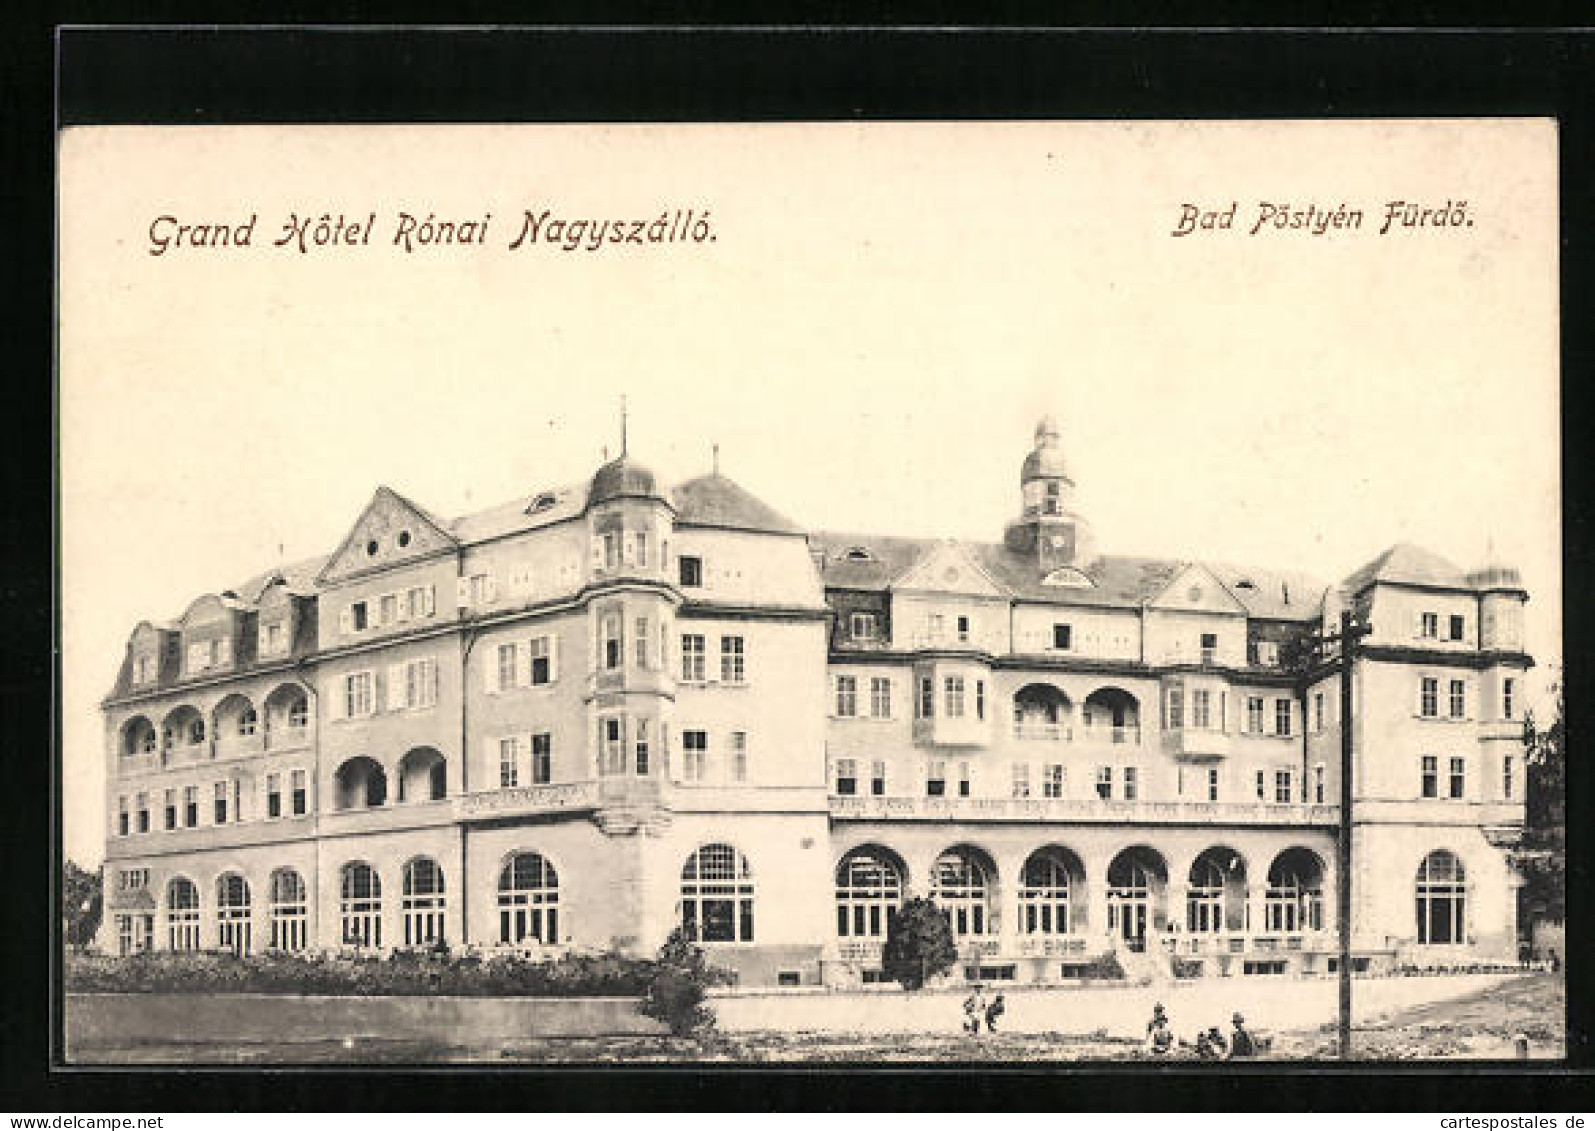 AK Bad Pöstyen Fürdö, Grand Hôtel Ronai Nagyszallo  - Slovakia